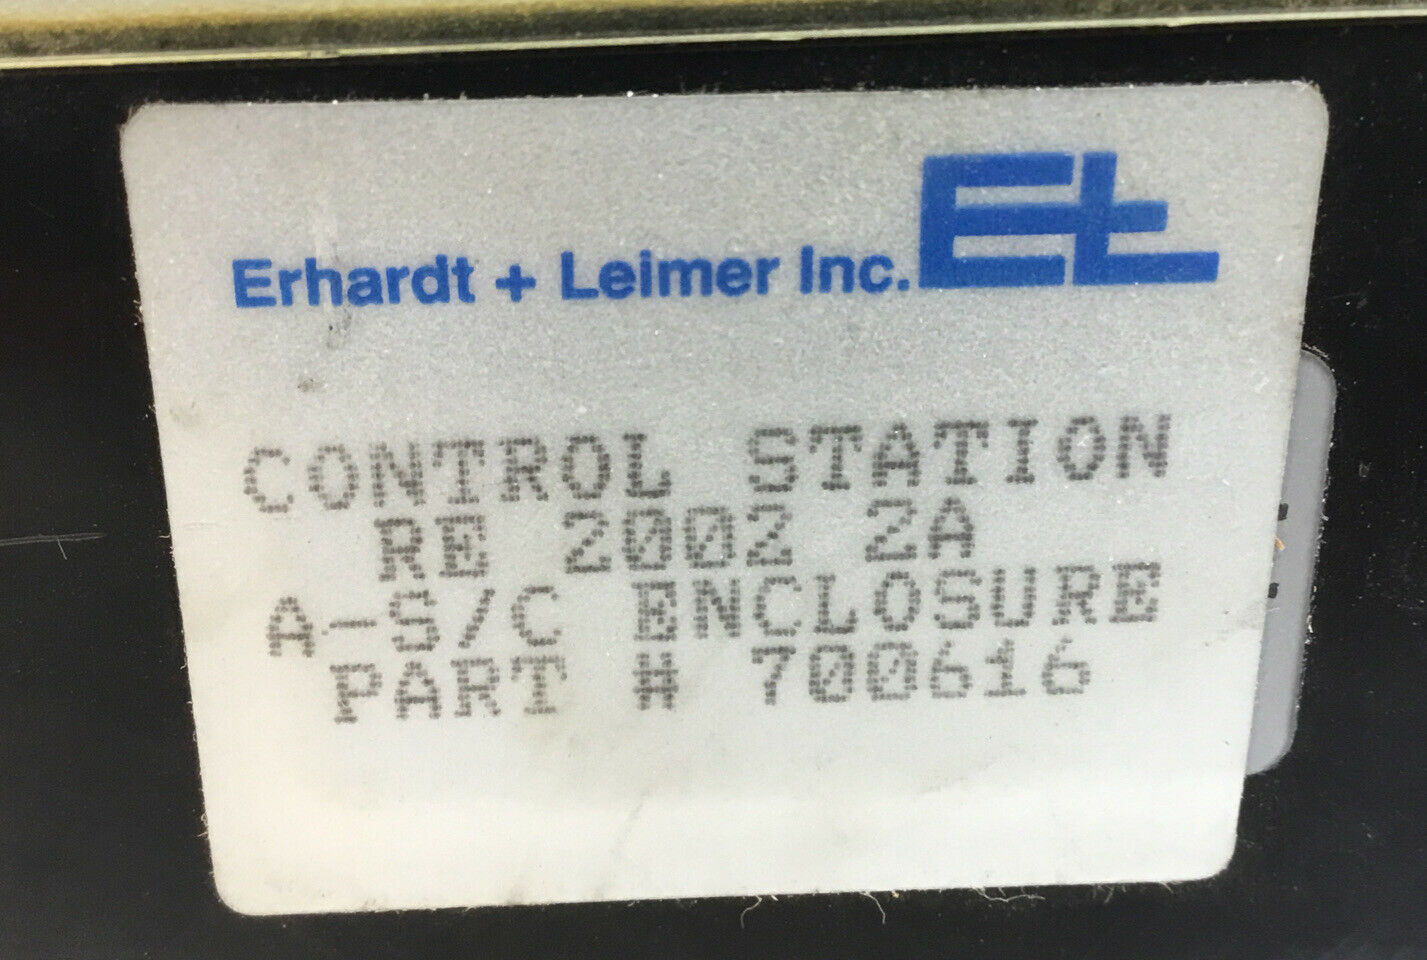 ERHARDT + LELMER INC.  RE 2002  /  700616 CONTROL STATION  5E